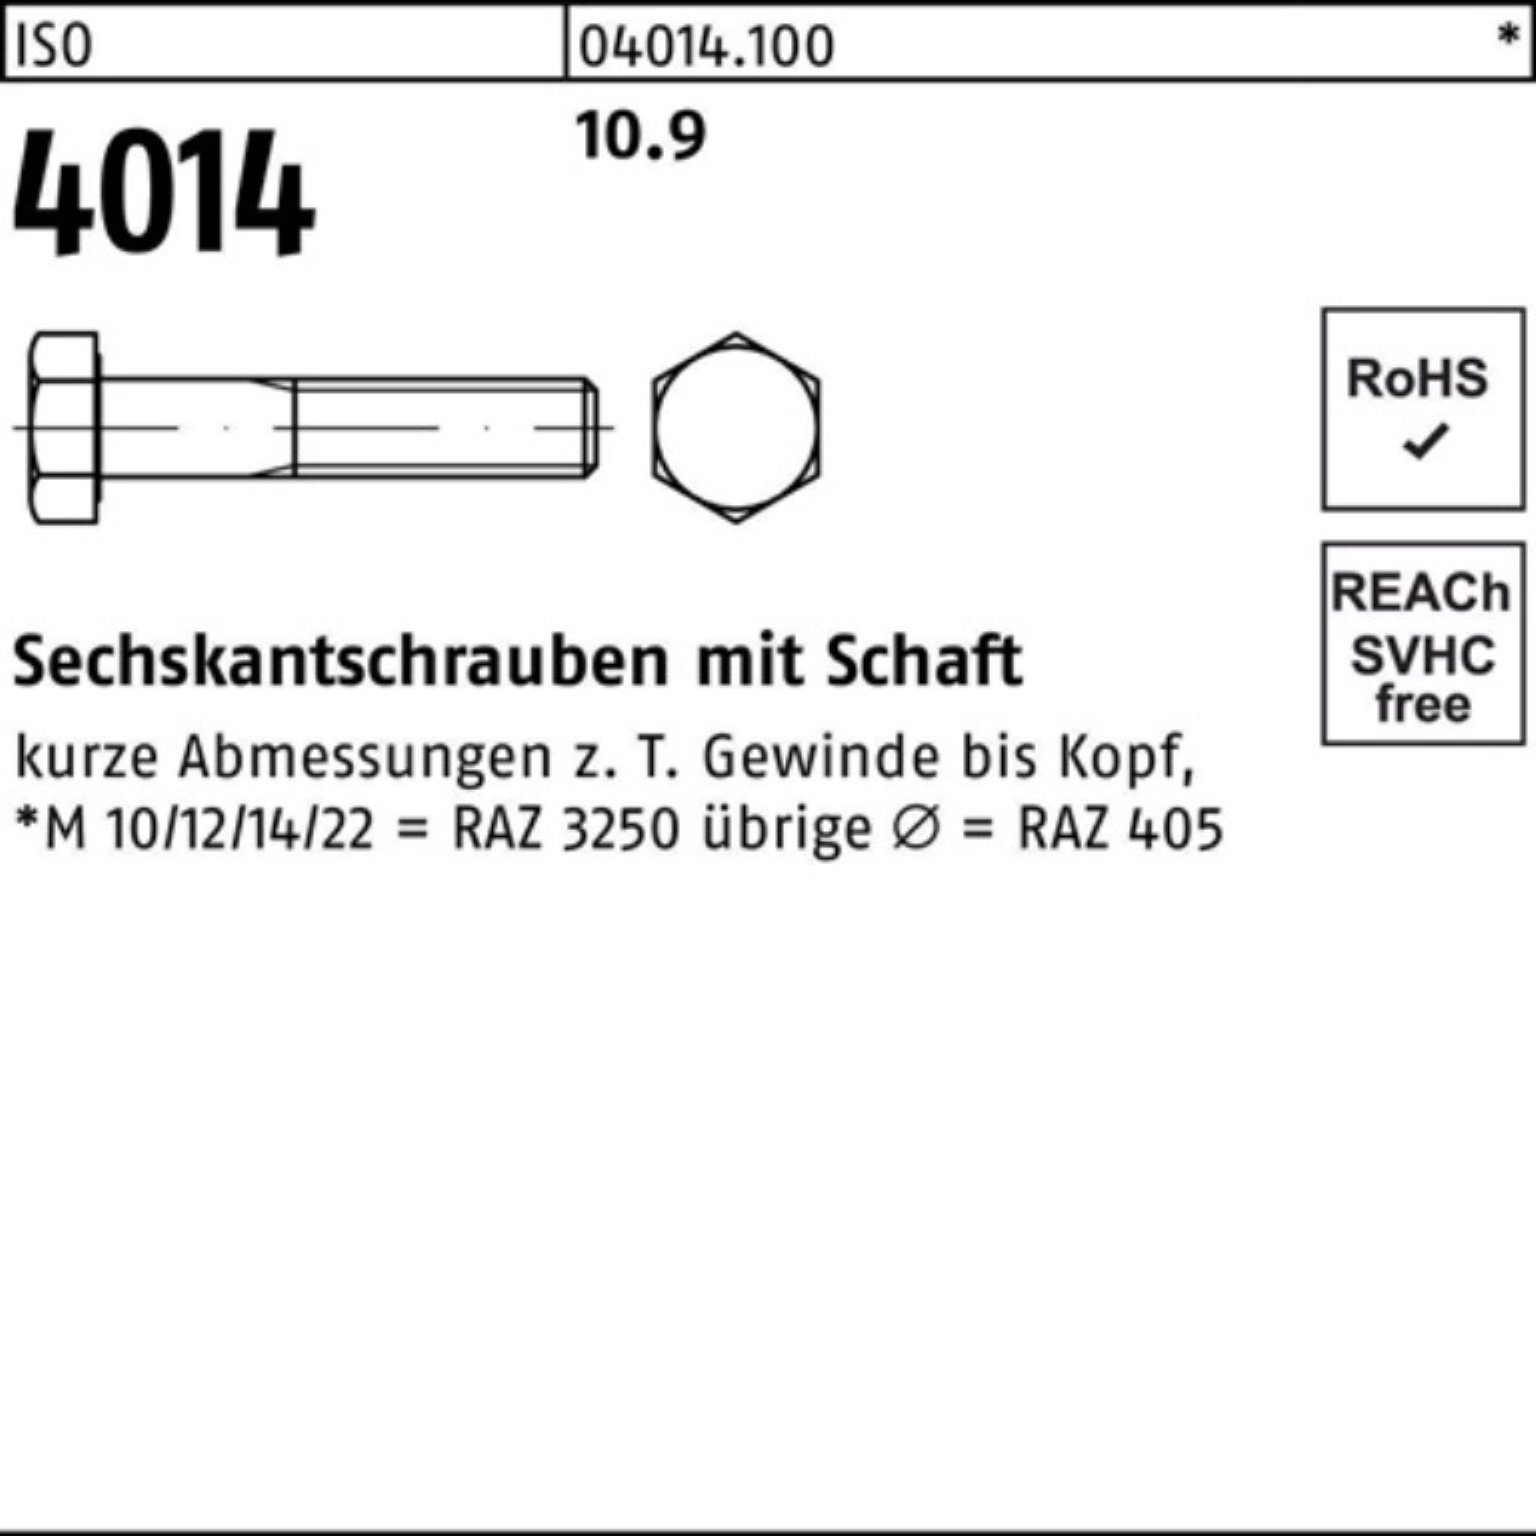 Schaft 100er ISO Stück Pack IS 150 Sechskantschraube Bufab M27x 1 Sechskantschraube 10.9 4014